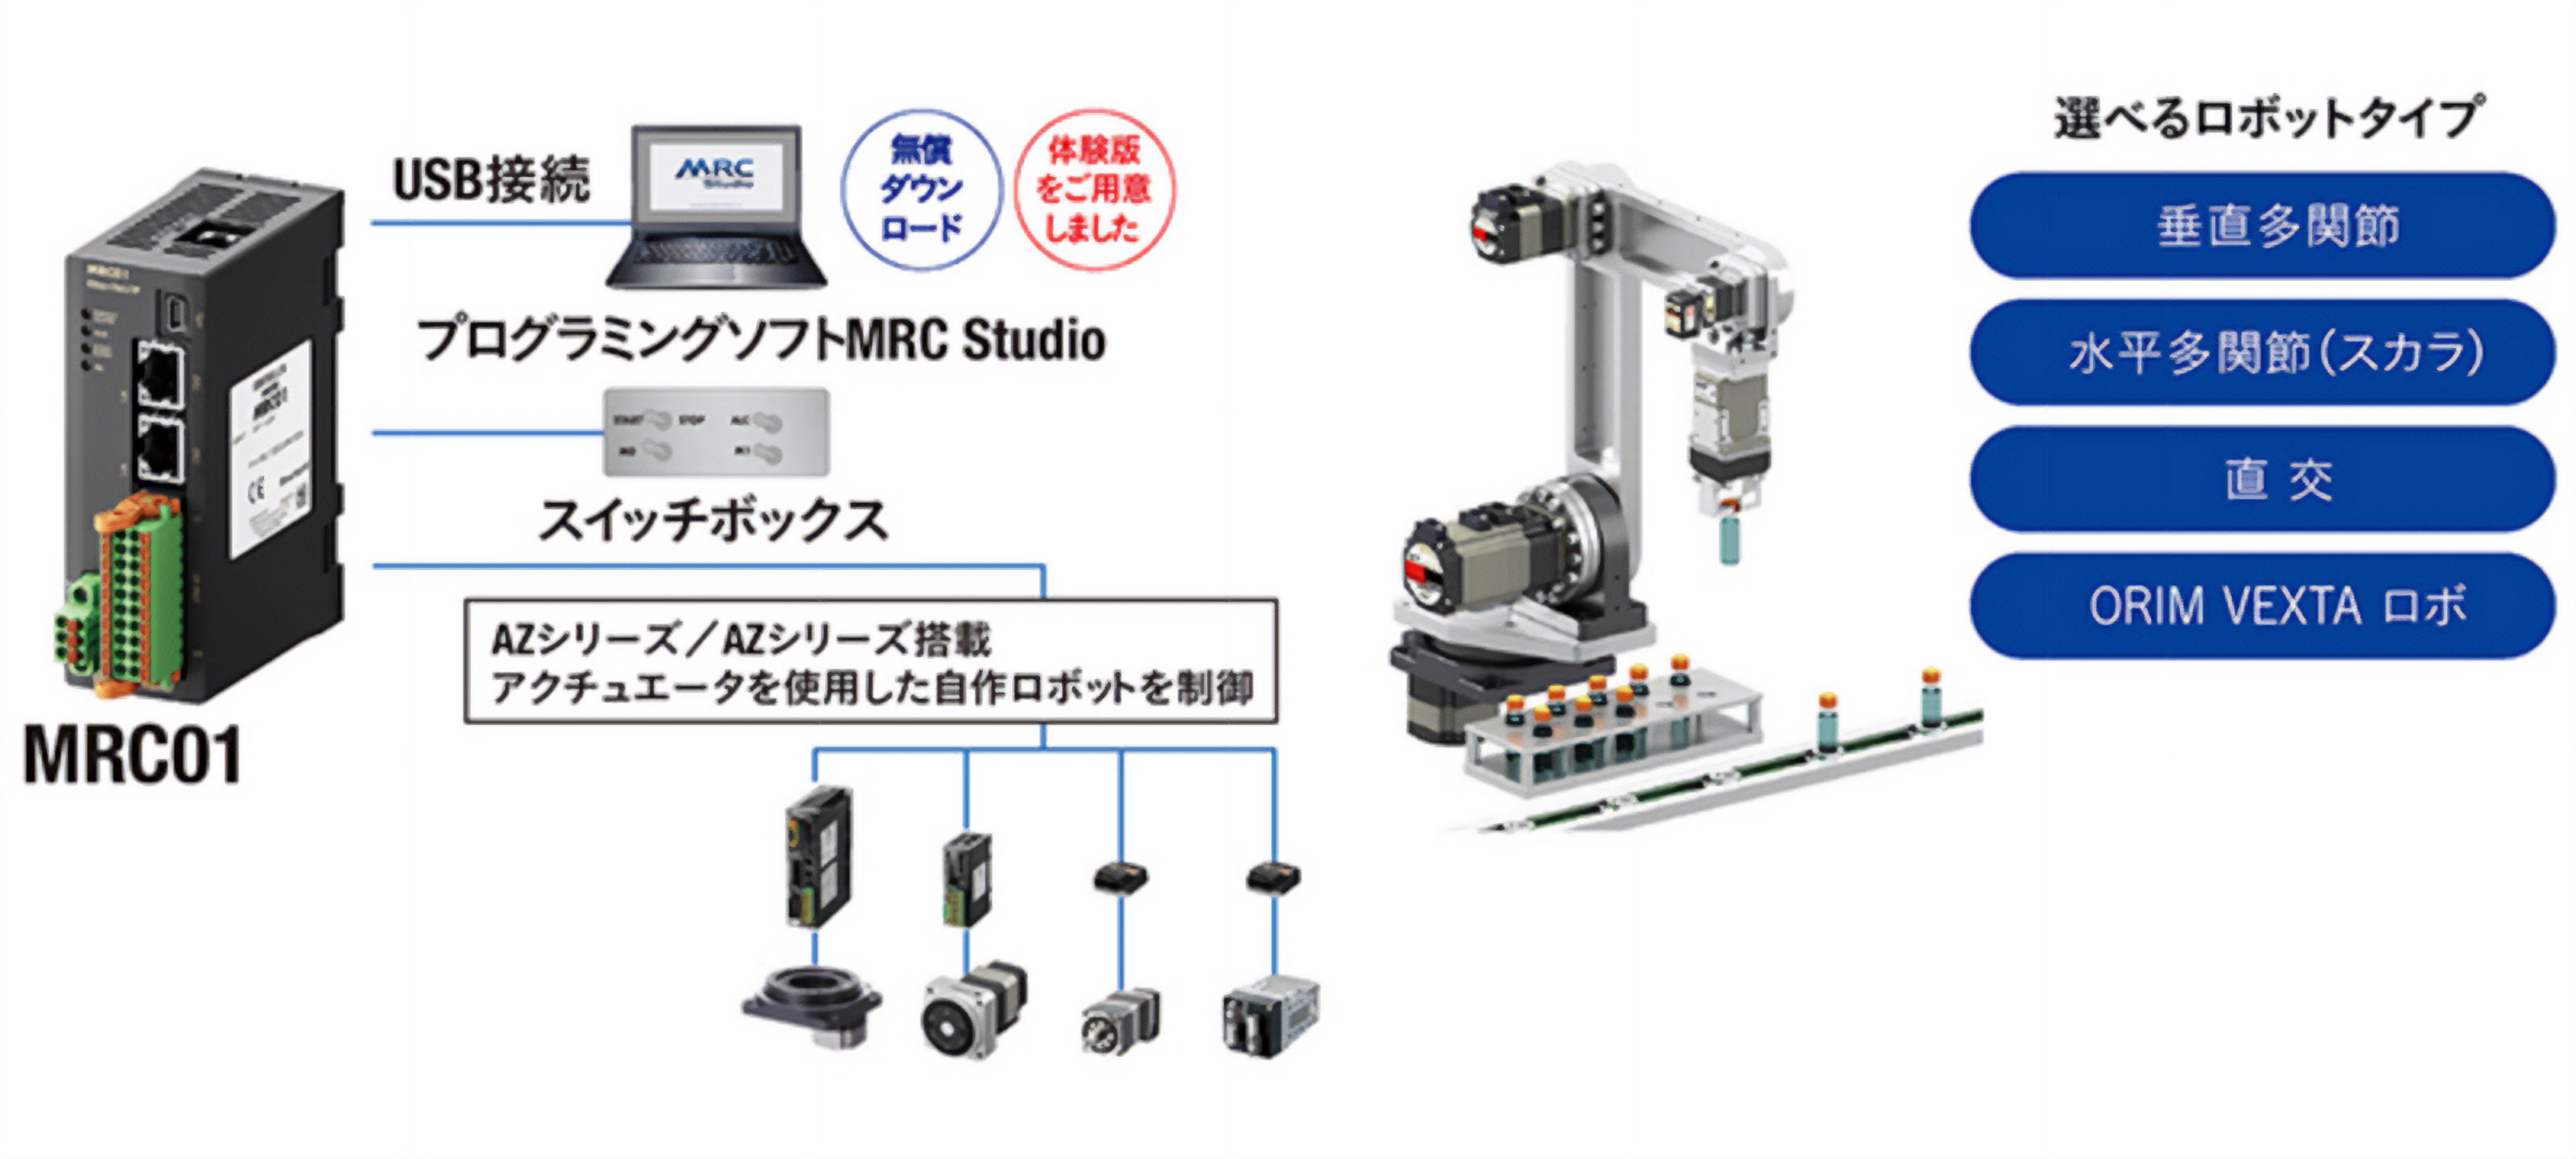 ロボットコントローラー MRC01の接続図と選べるロボットタイプ（垂直多関節｜水平多関節（スカラ）｜直交｜ORIM VEXTA ロボ）